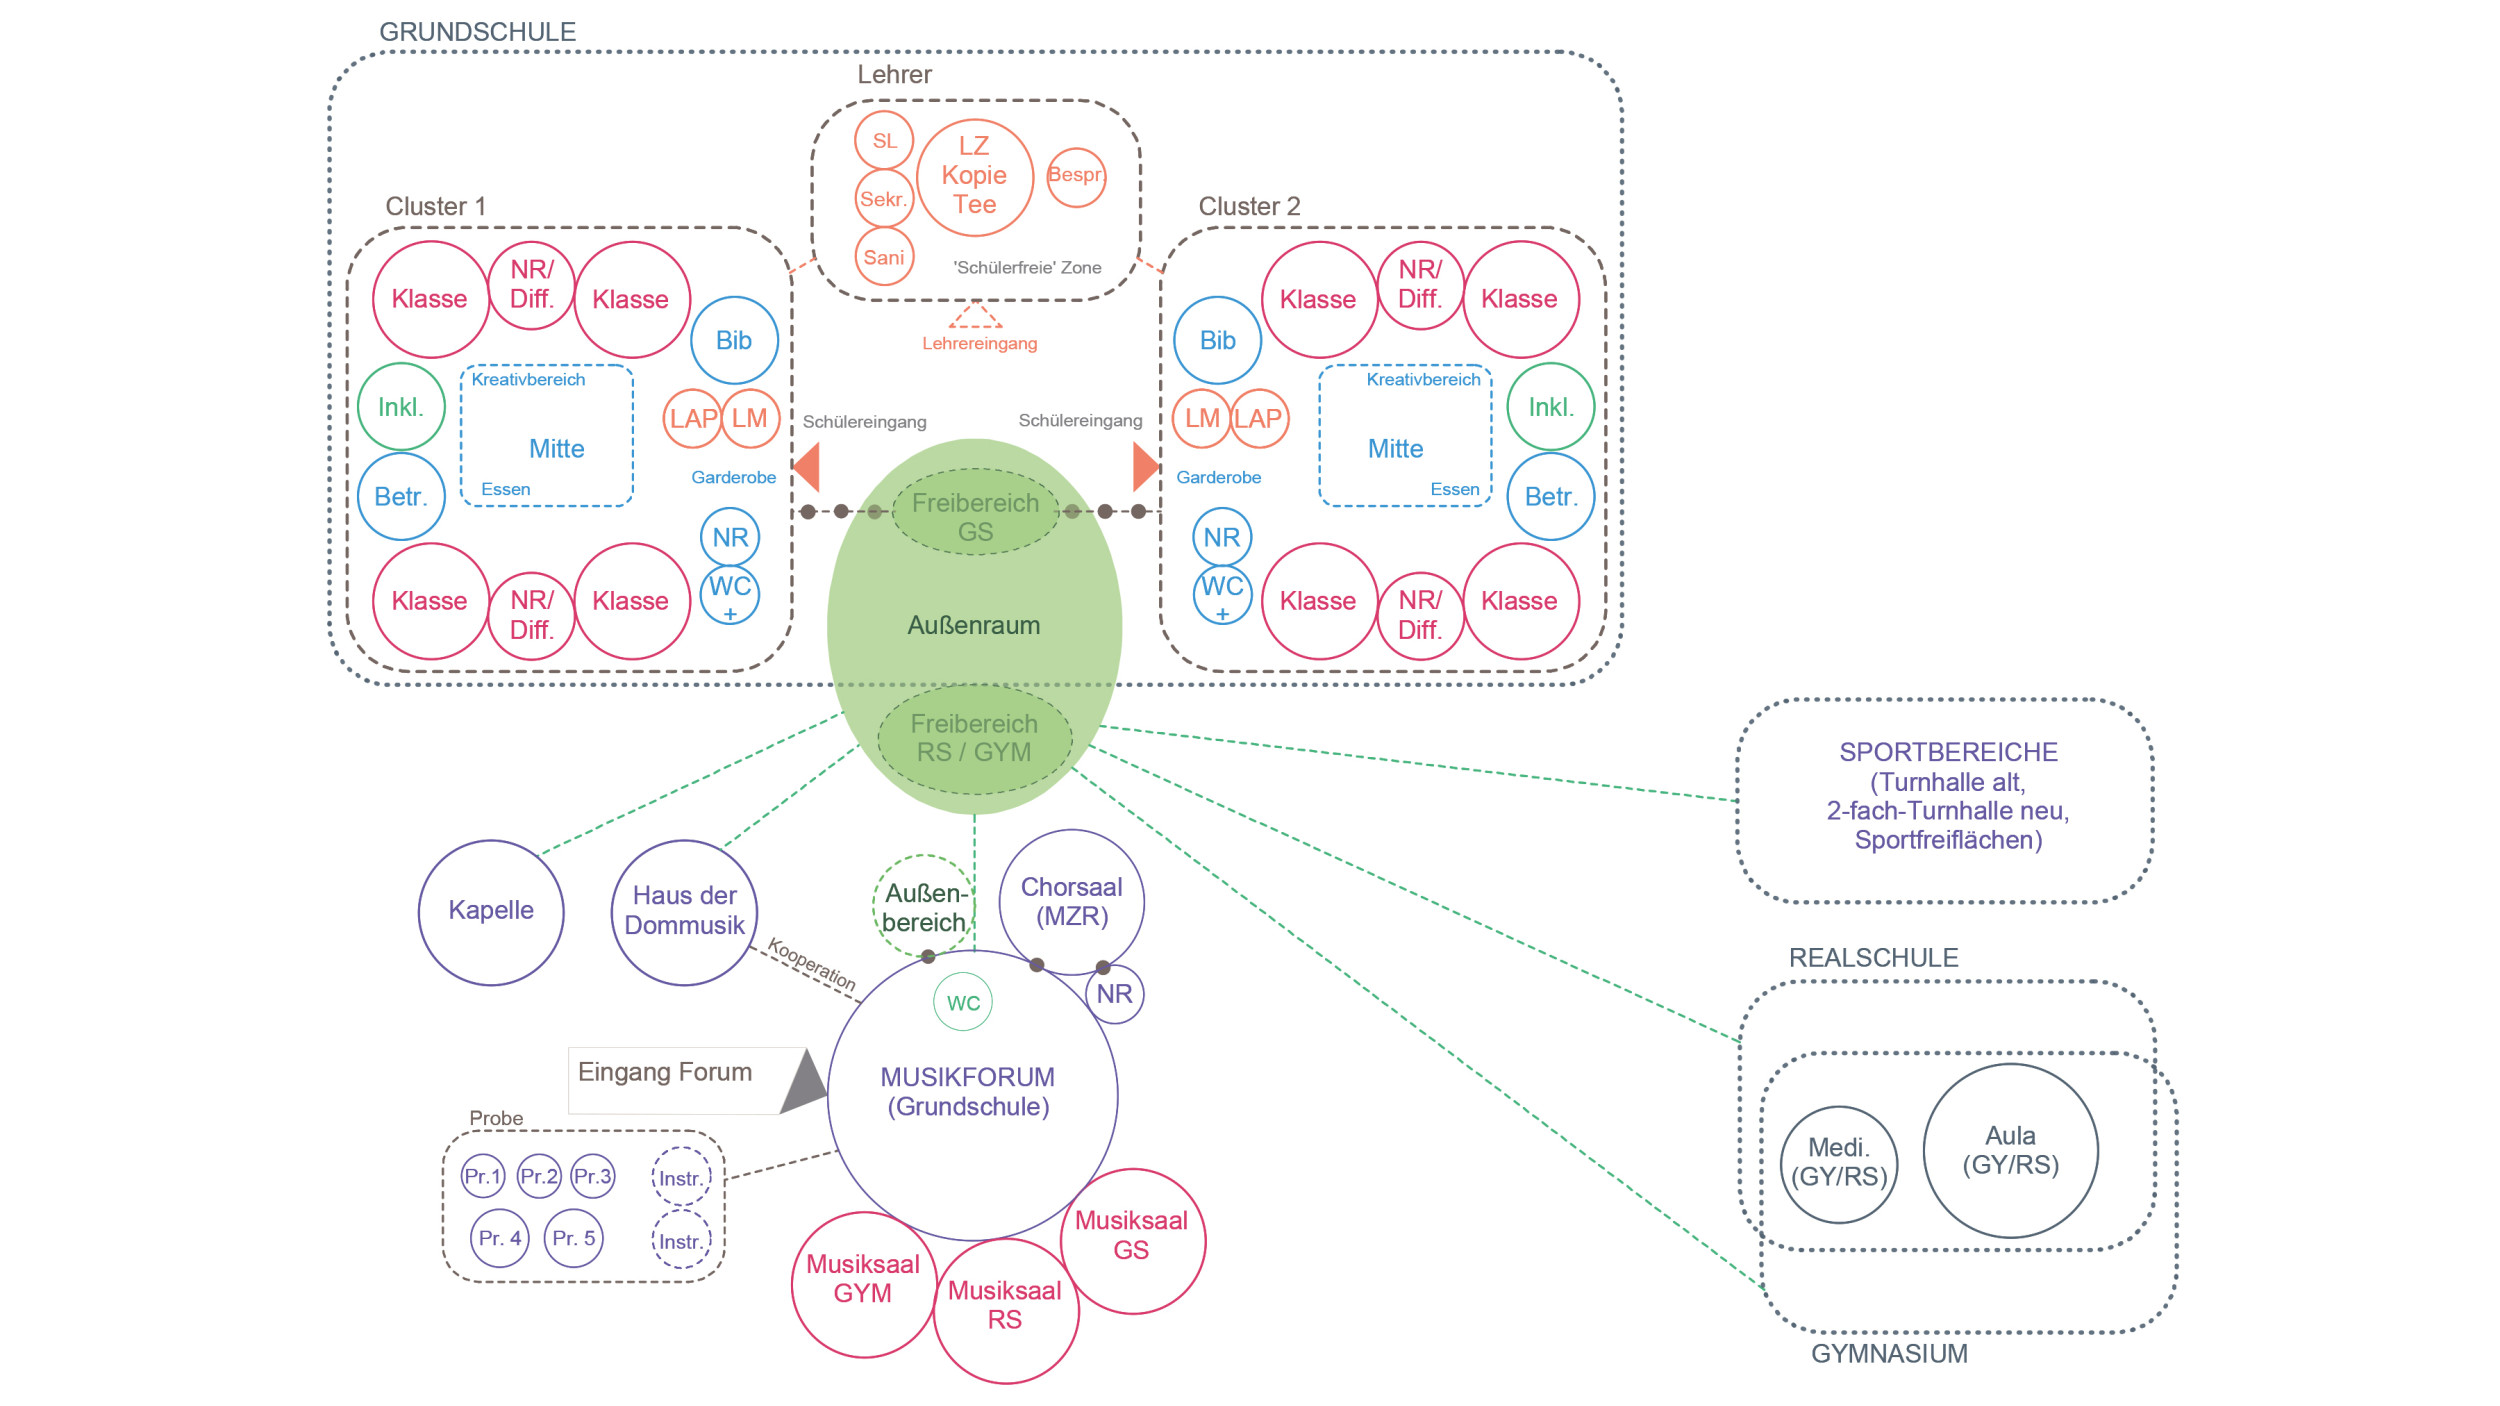 Grafik zeigt in einem Strukturdiagramm die Verbindungen zwischen Musikforum, Sport, Real- und Grundschule auf.